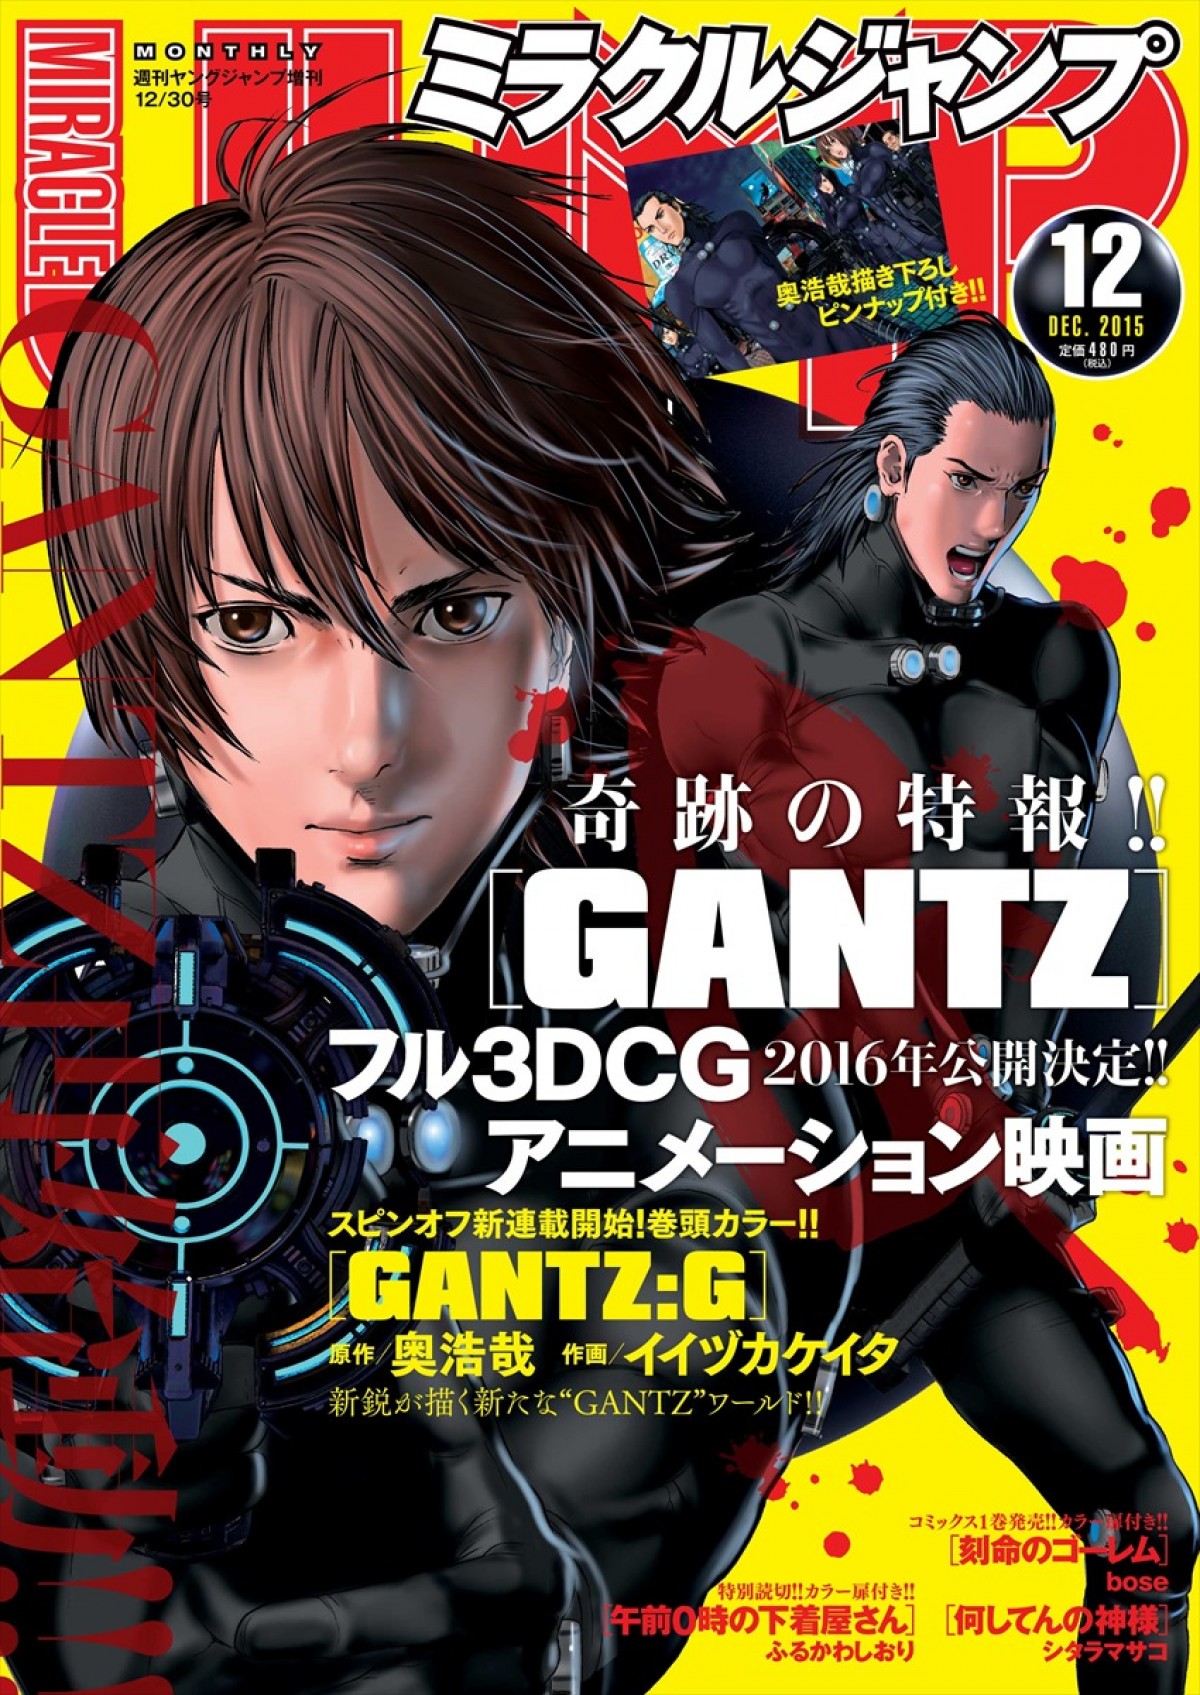 Gantz 新プロジェクト始動 新作3dcg映画公開 スピンオフコミック連載開始 15年11月17日 コミック ニュース クランクイン